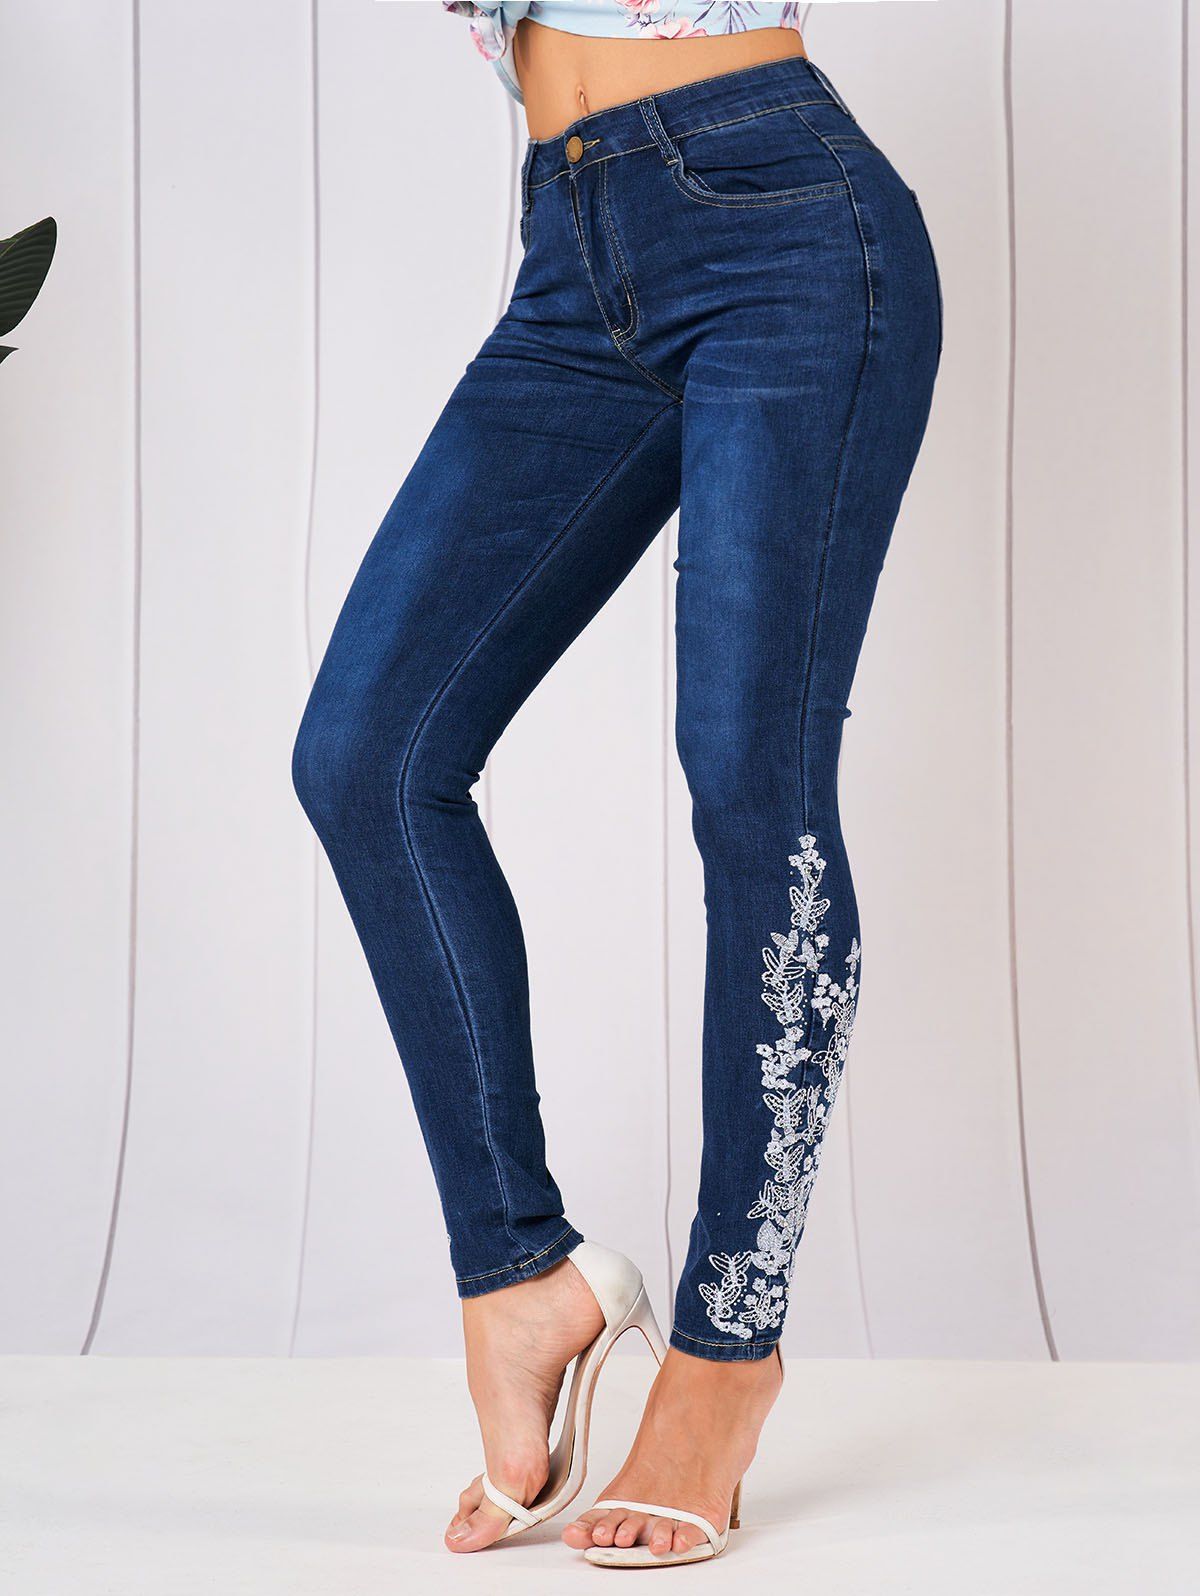 Skinny Jeans Embroidery Flower Butterfly Rhinestone Zipper Fly Pockets Long Denim Pants - DEEP BLUE L